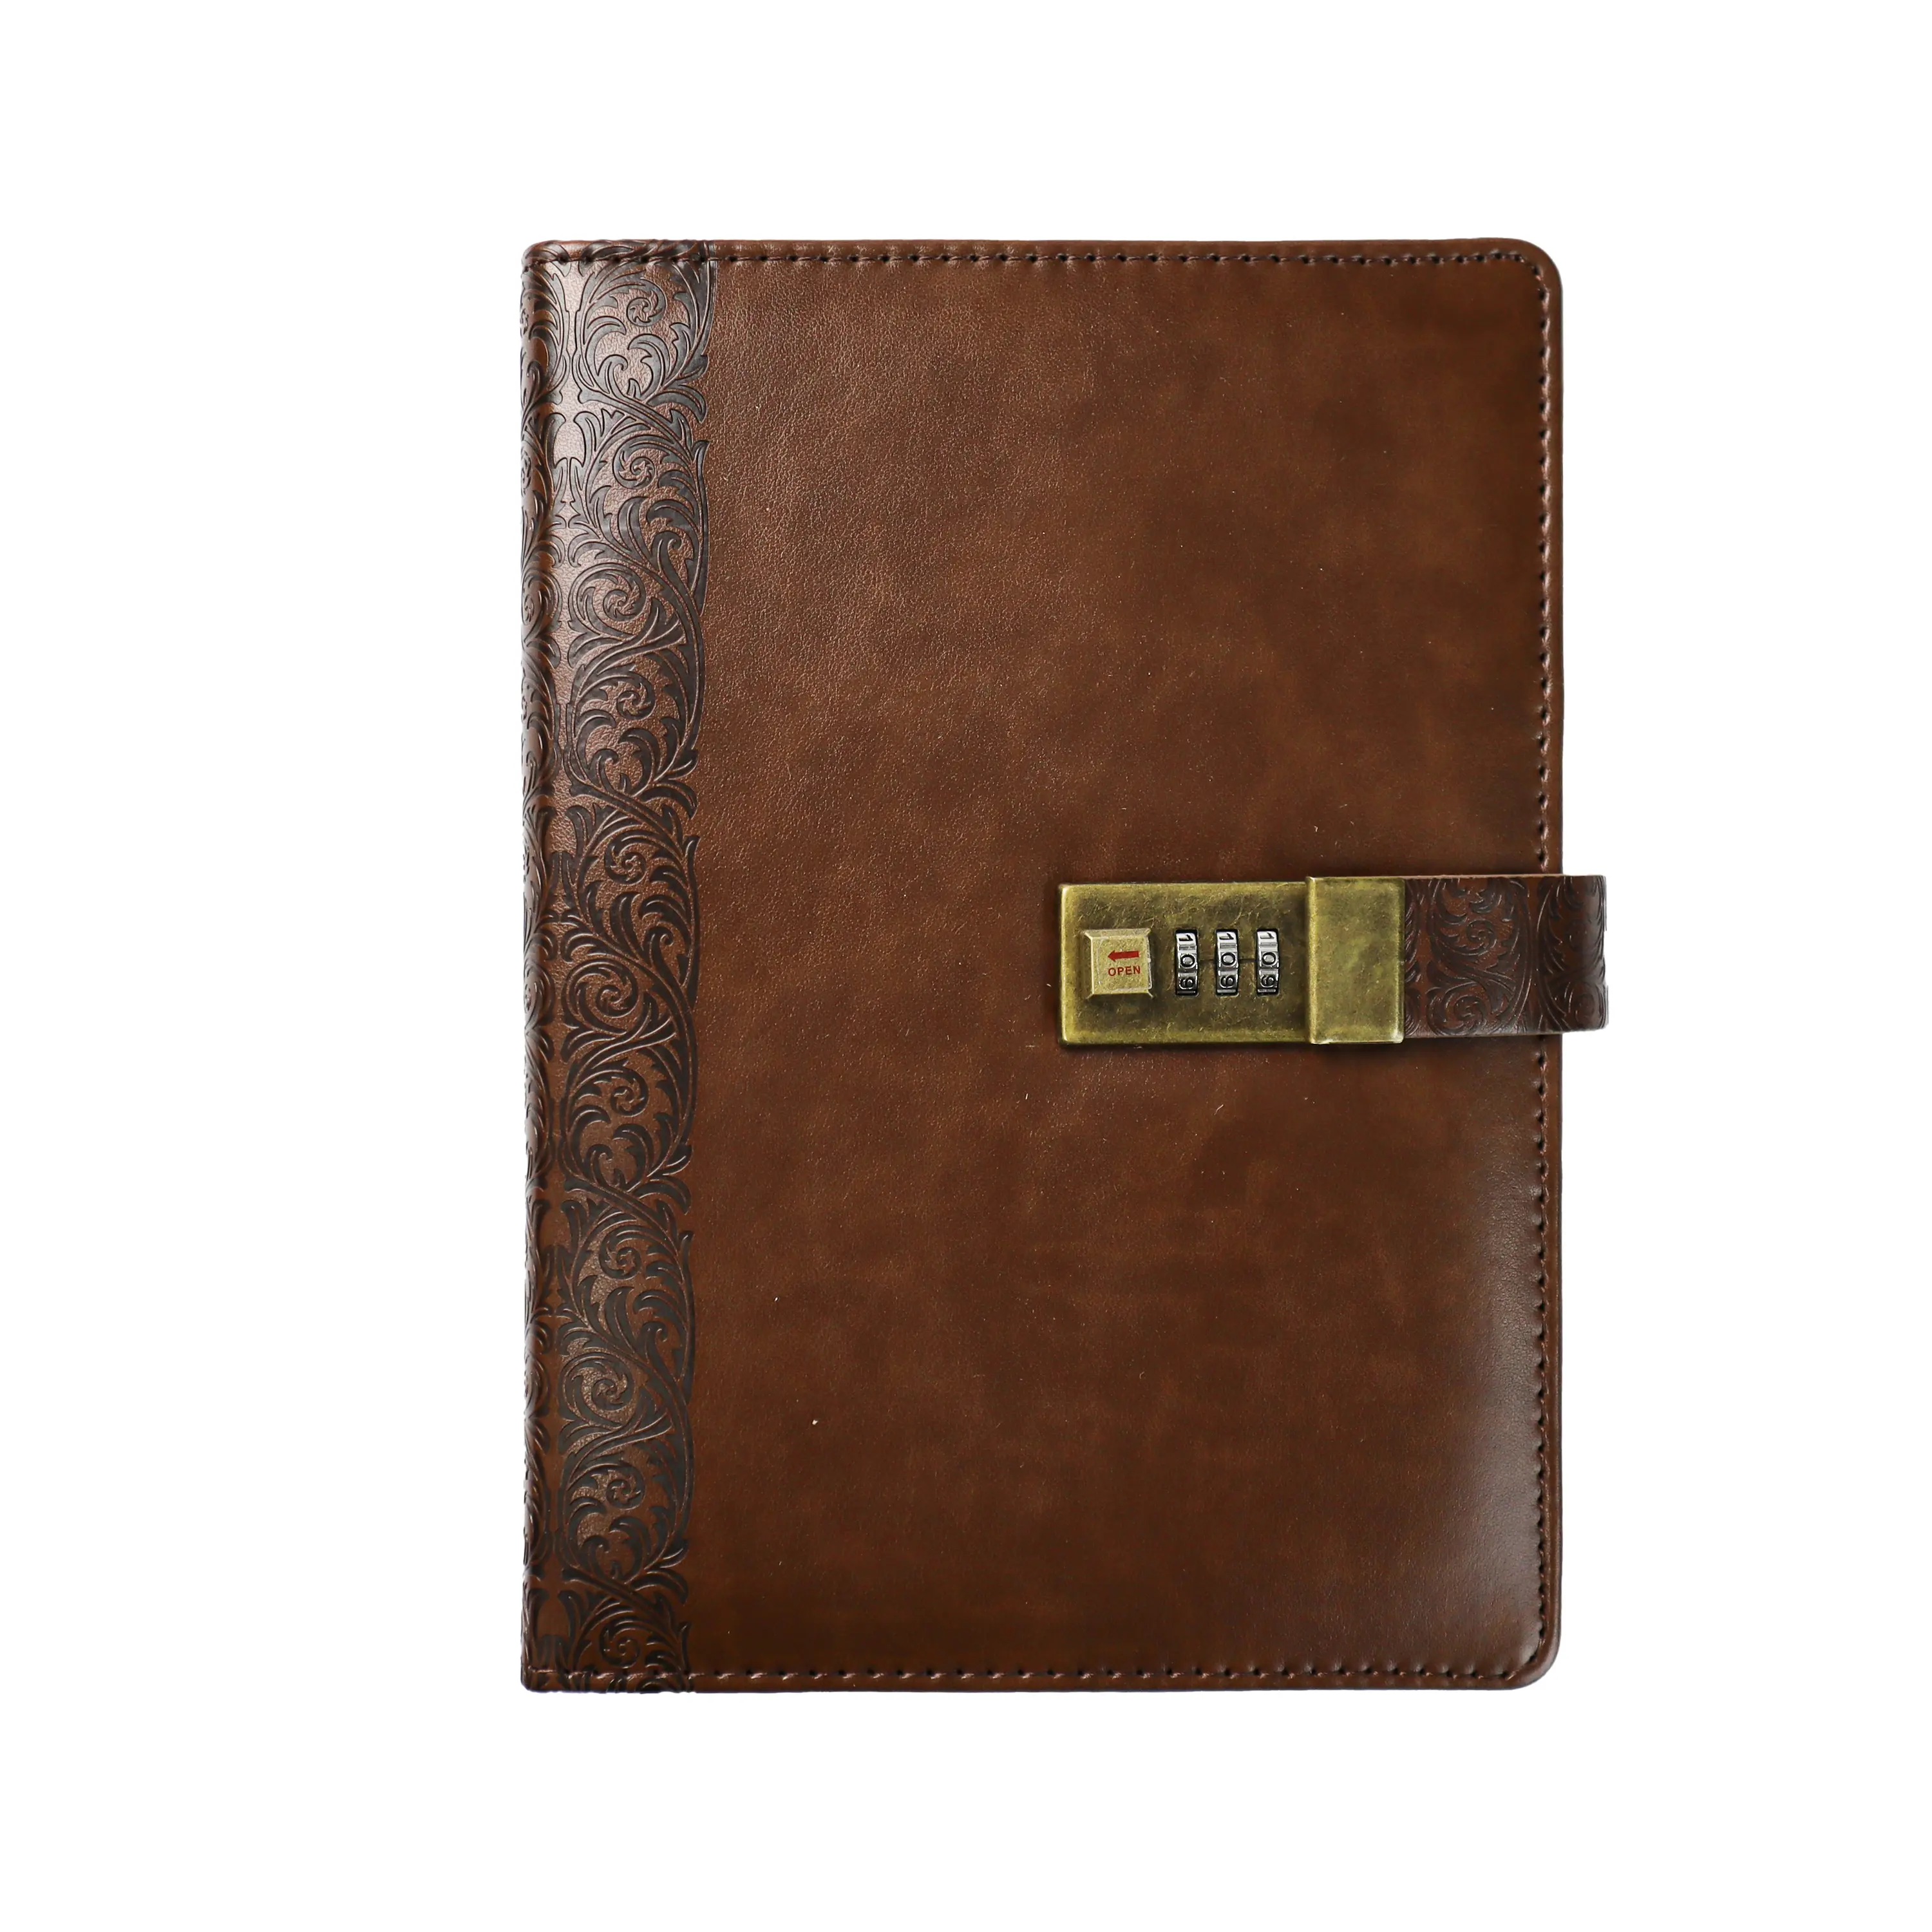 Passen Sie A5 PU Leder Vintage Journal Notizbuch Tagebuch mit Schloss an